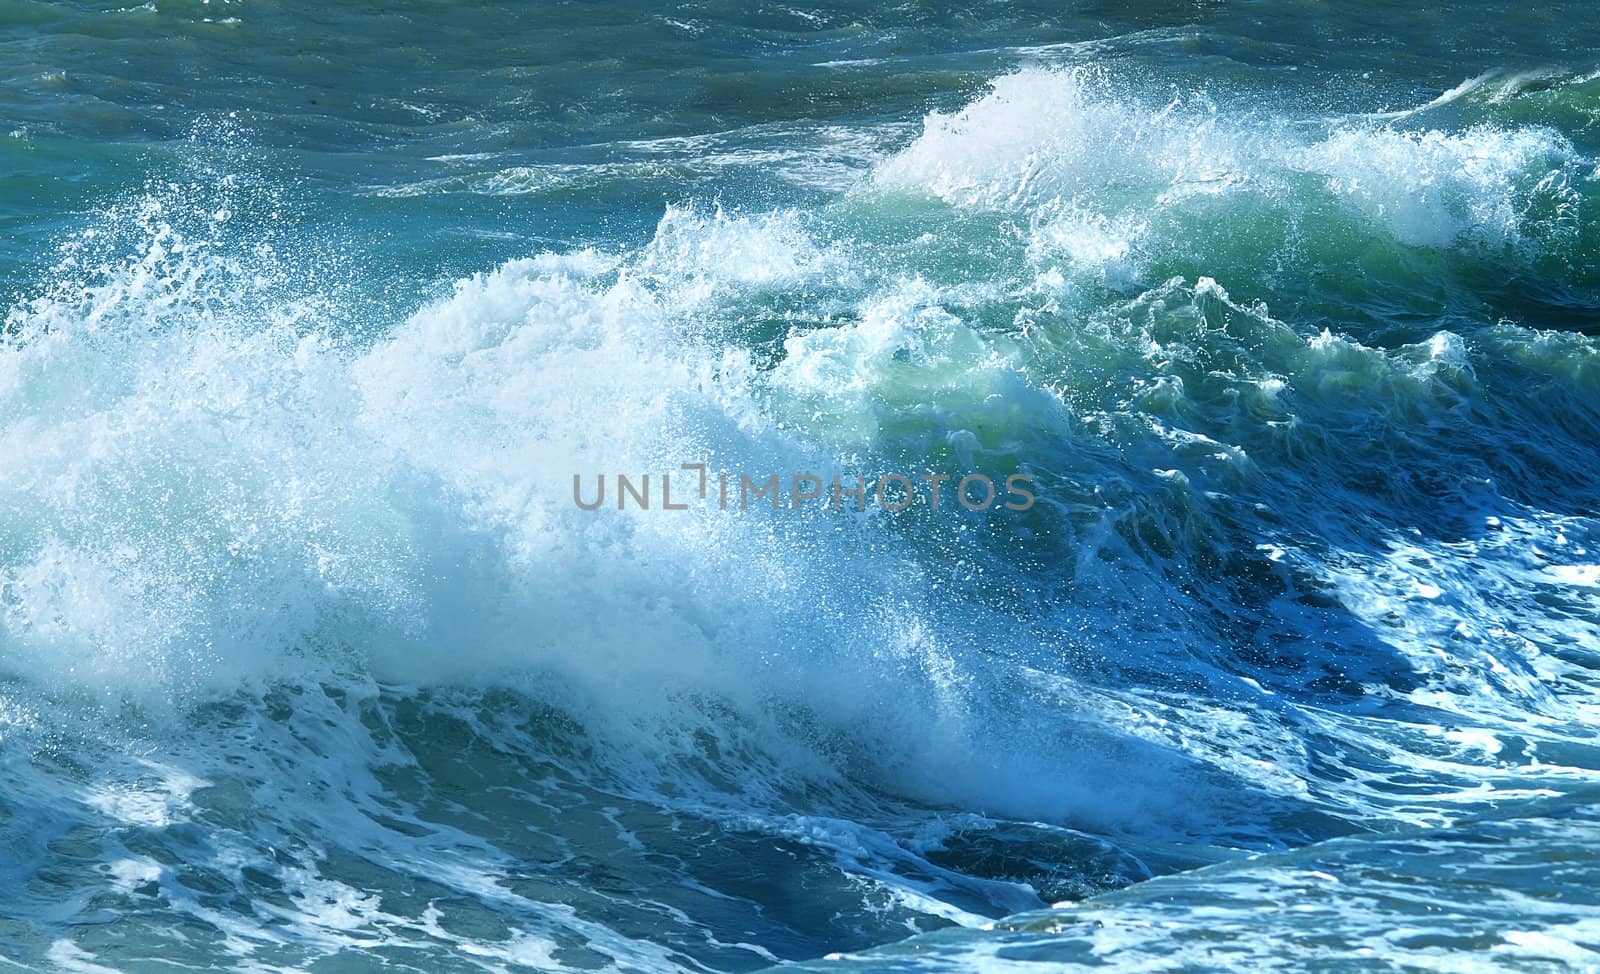 Blue ocean wave by kvinoz